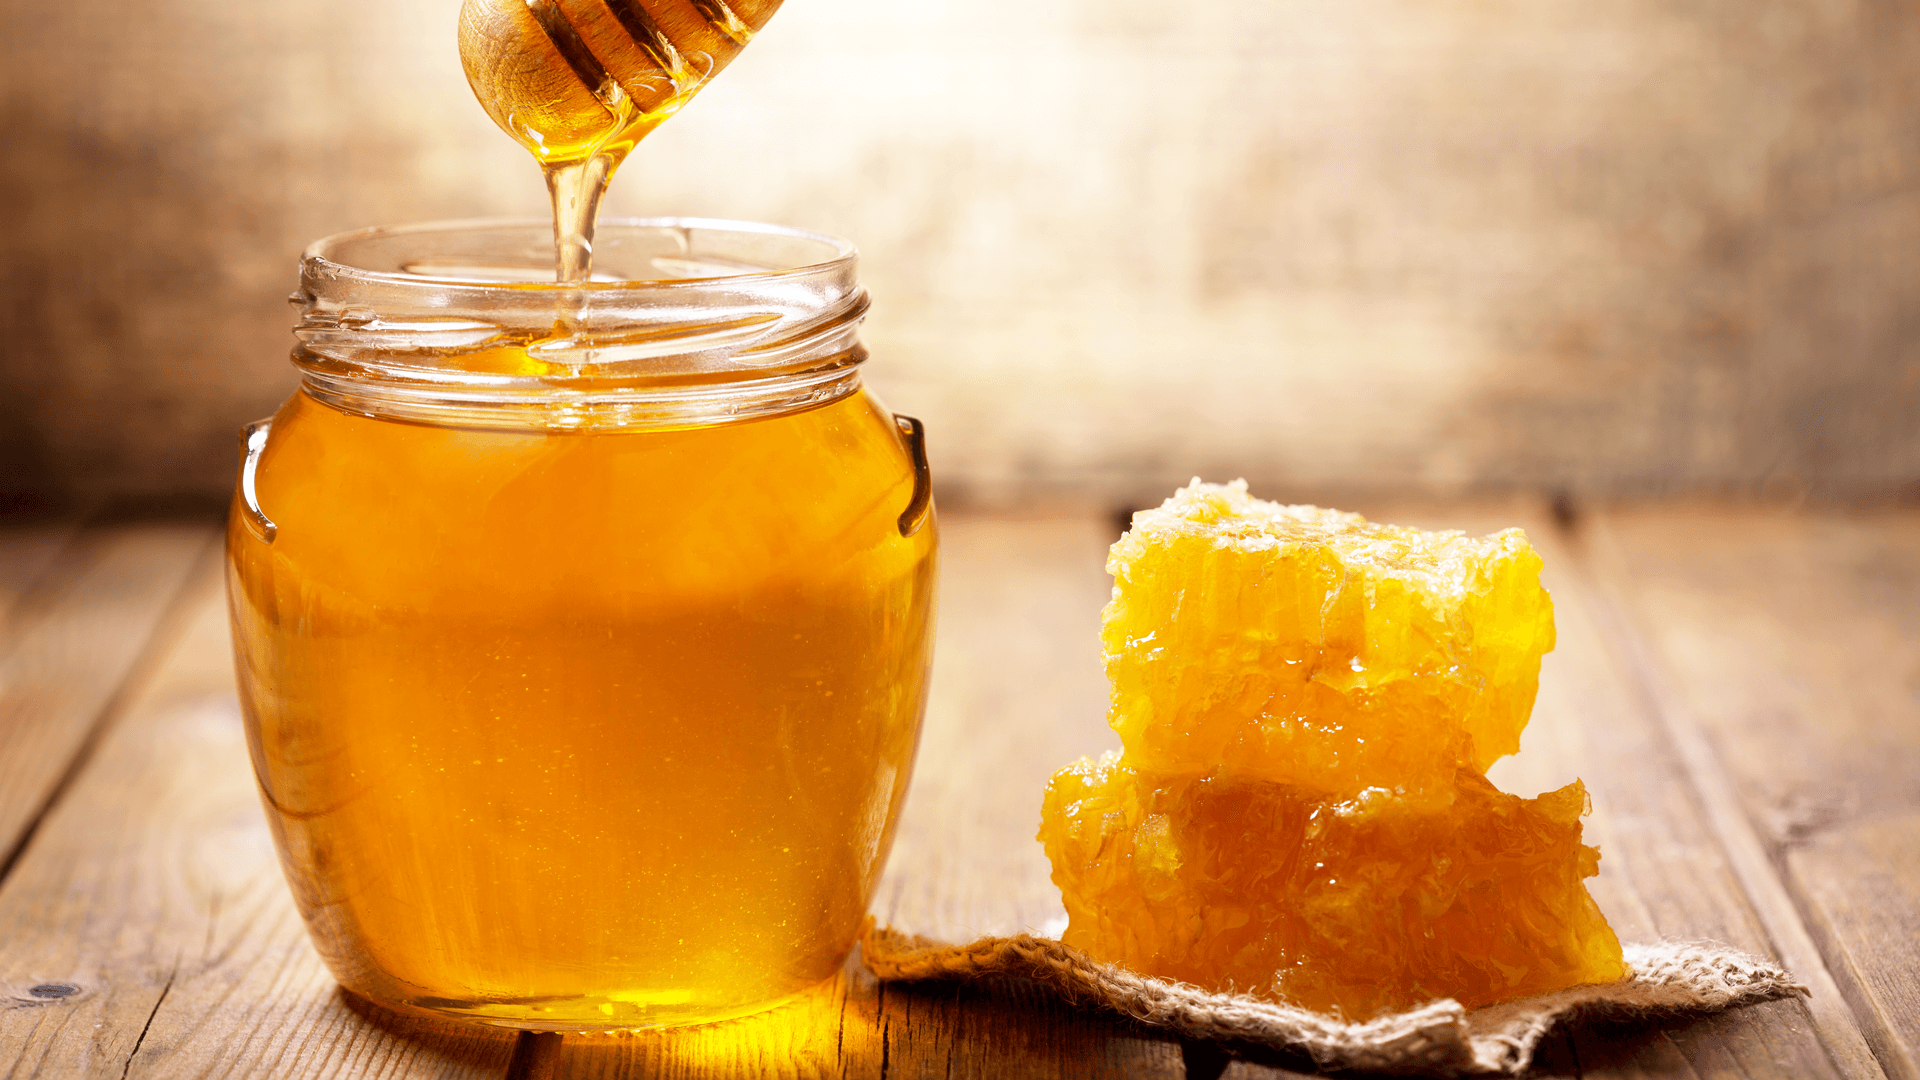 “Thần dược” mật ong và những tác dụng đến sức khỏe, sắc đẹp